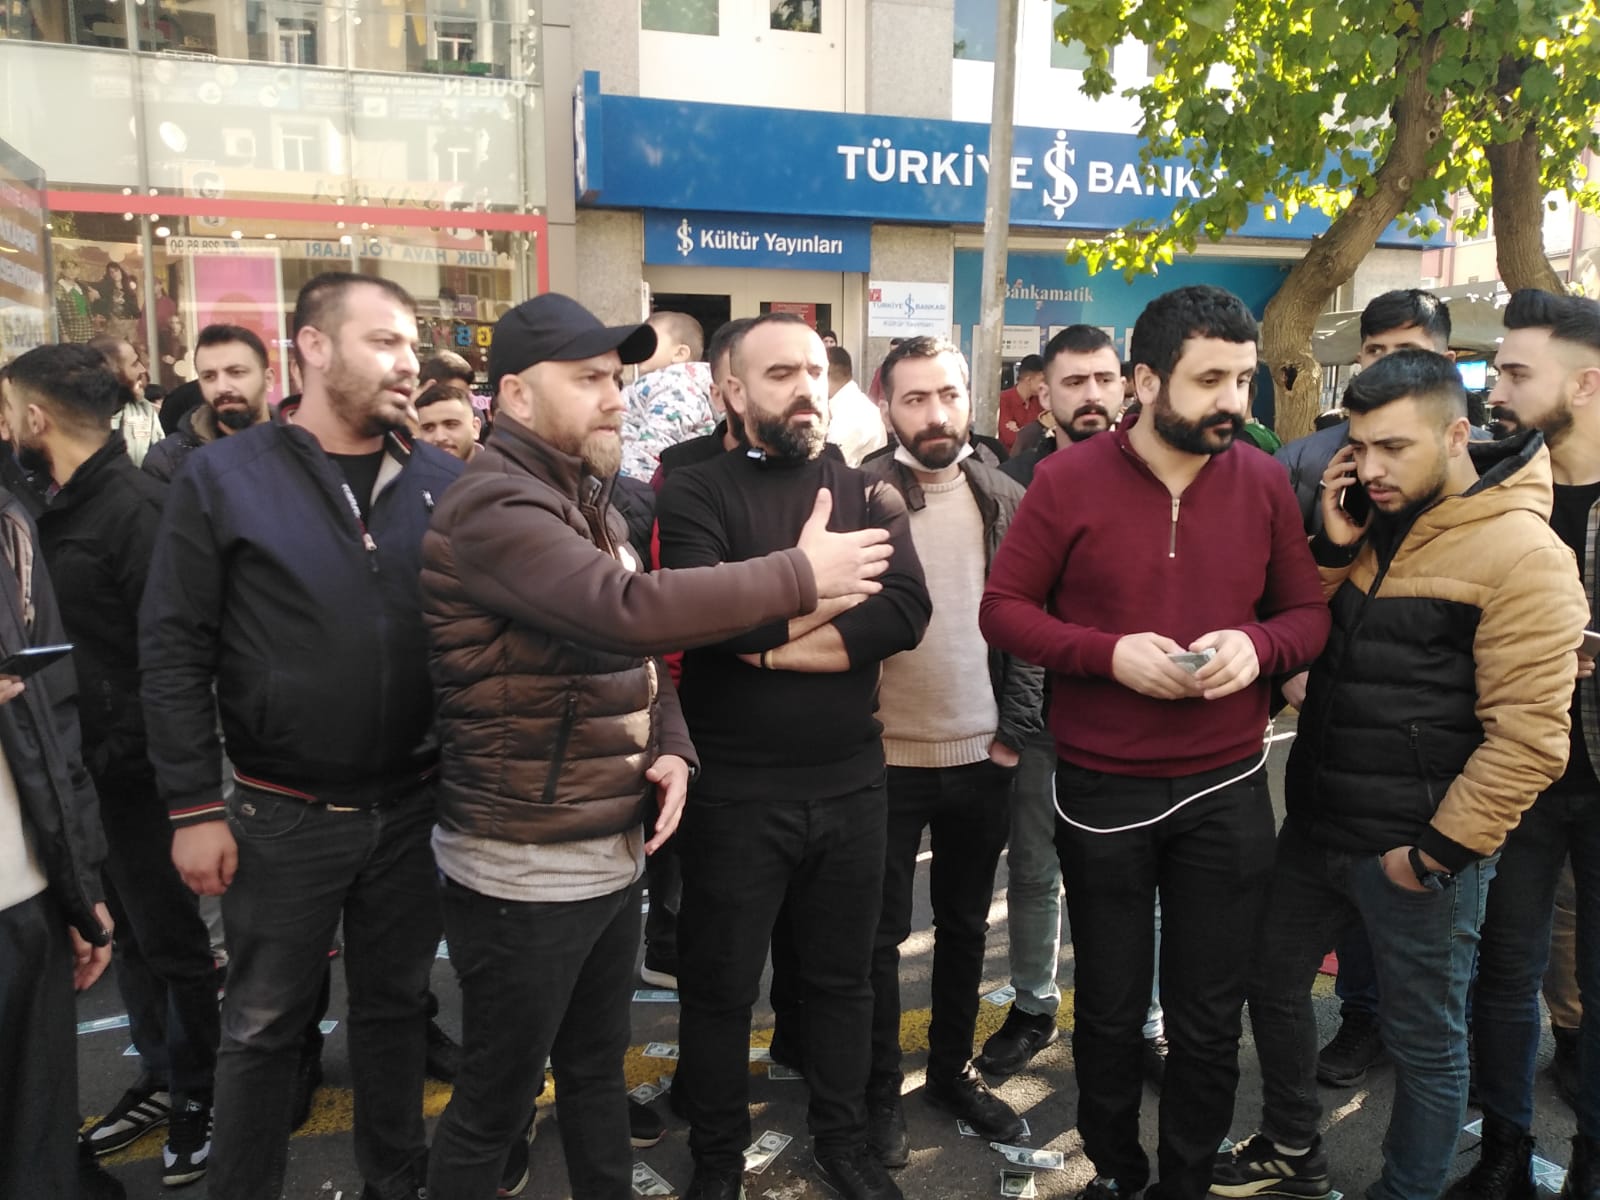 VİDEO HABER - Diyarbakır esnafından Dolar protestosu